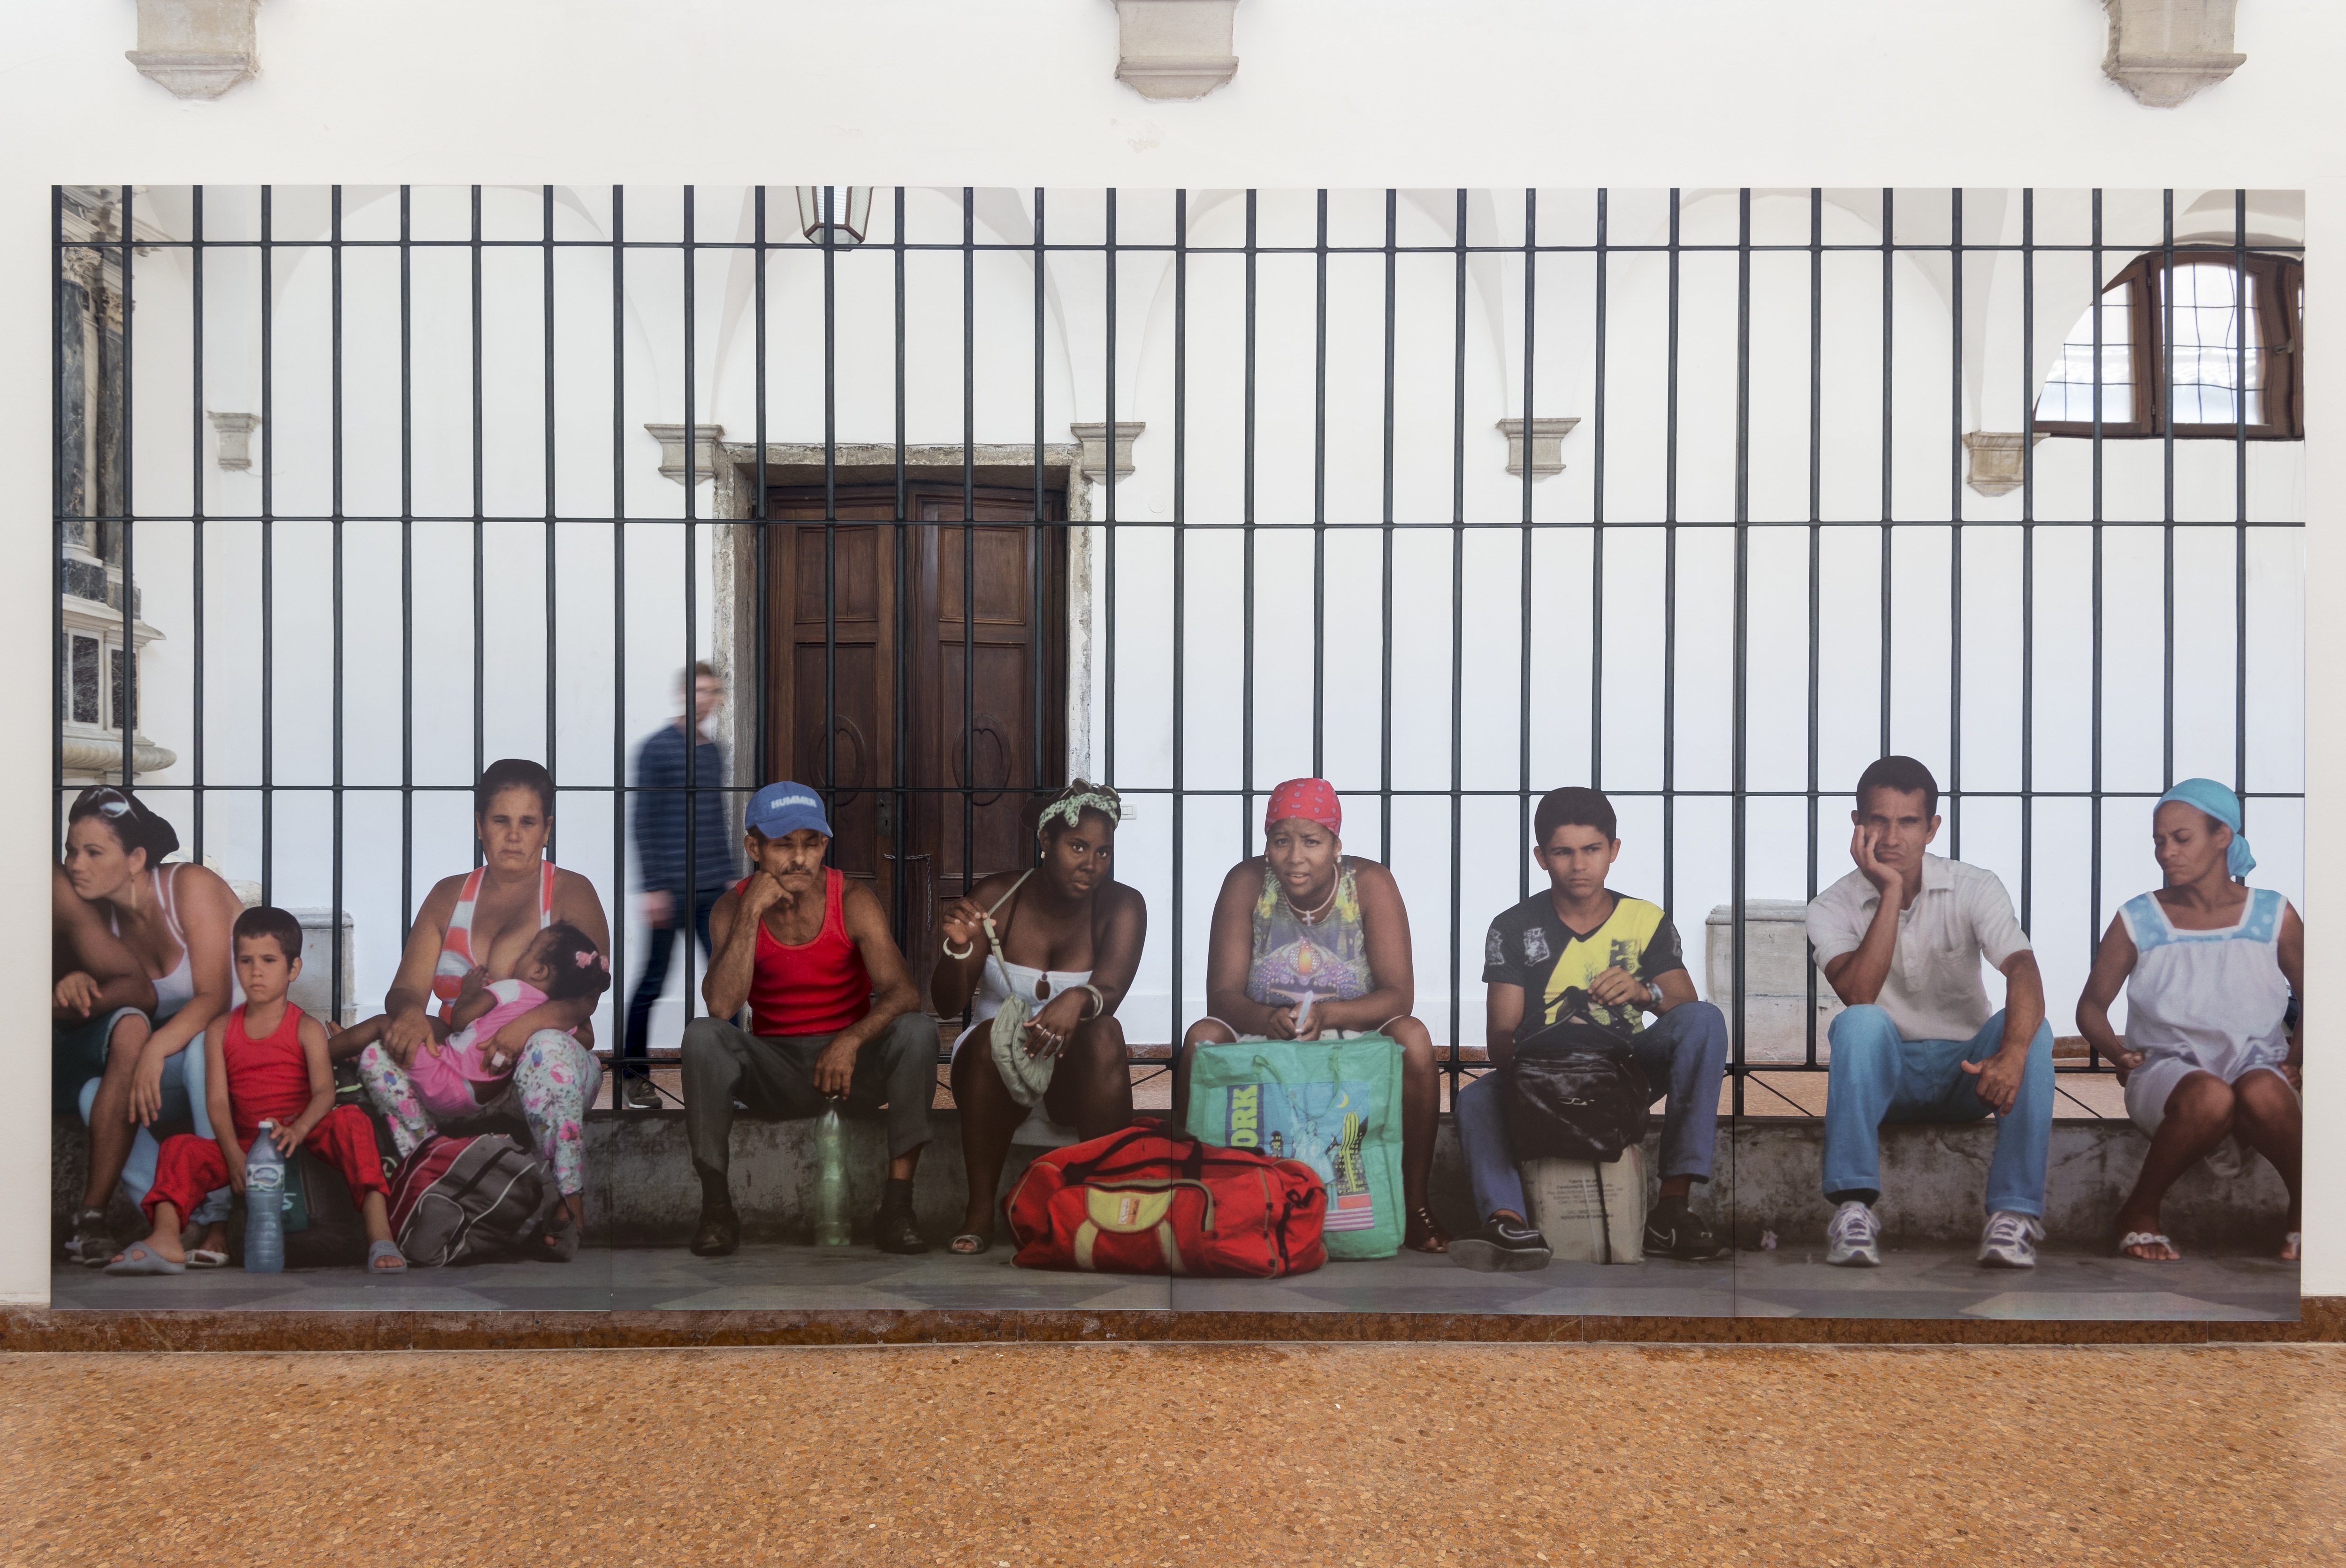 La Habana – Persone in attesa, 2015, serigrafia su acciaio inox, 250×500 cm, Courtesy: the artist and GALLERIA CONTINUA, San Gimignano / Beijing / Les Moulins / Habana, Photo by: Oak Taylor-Smith